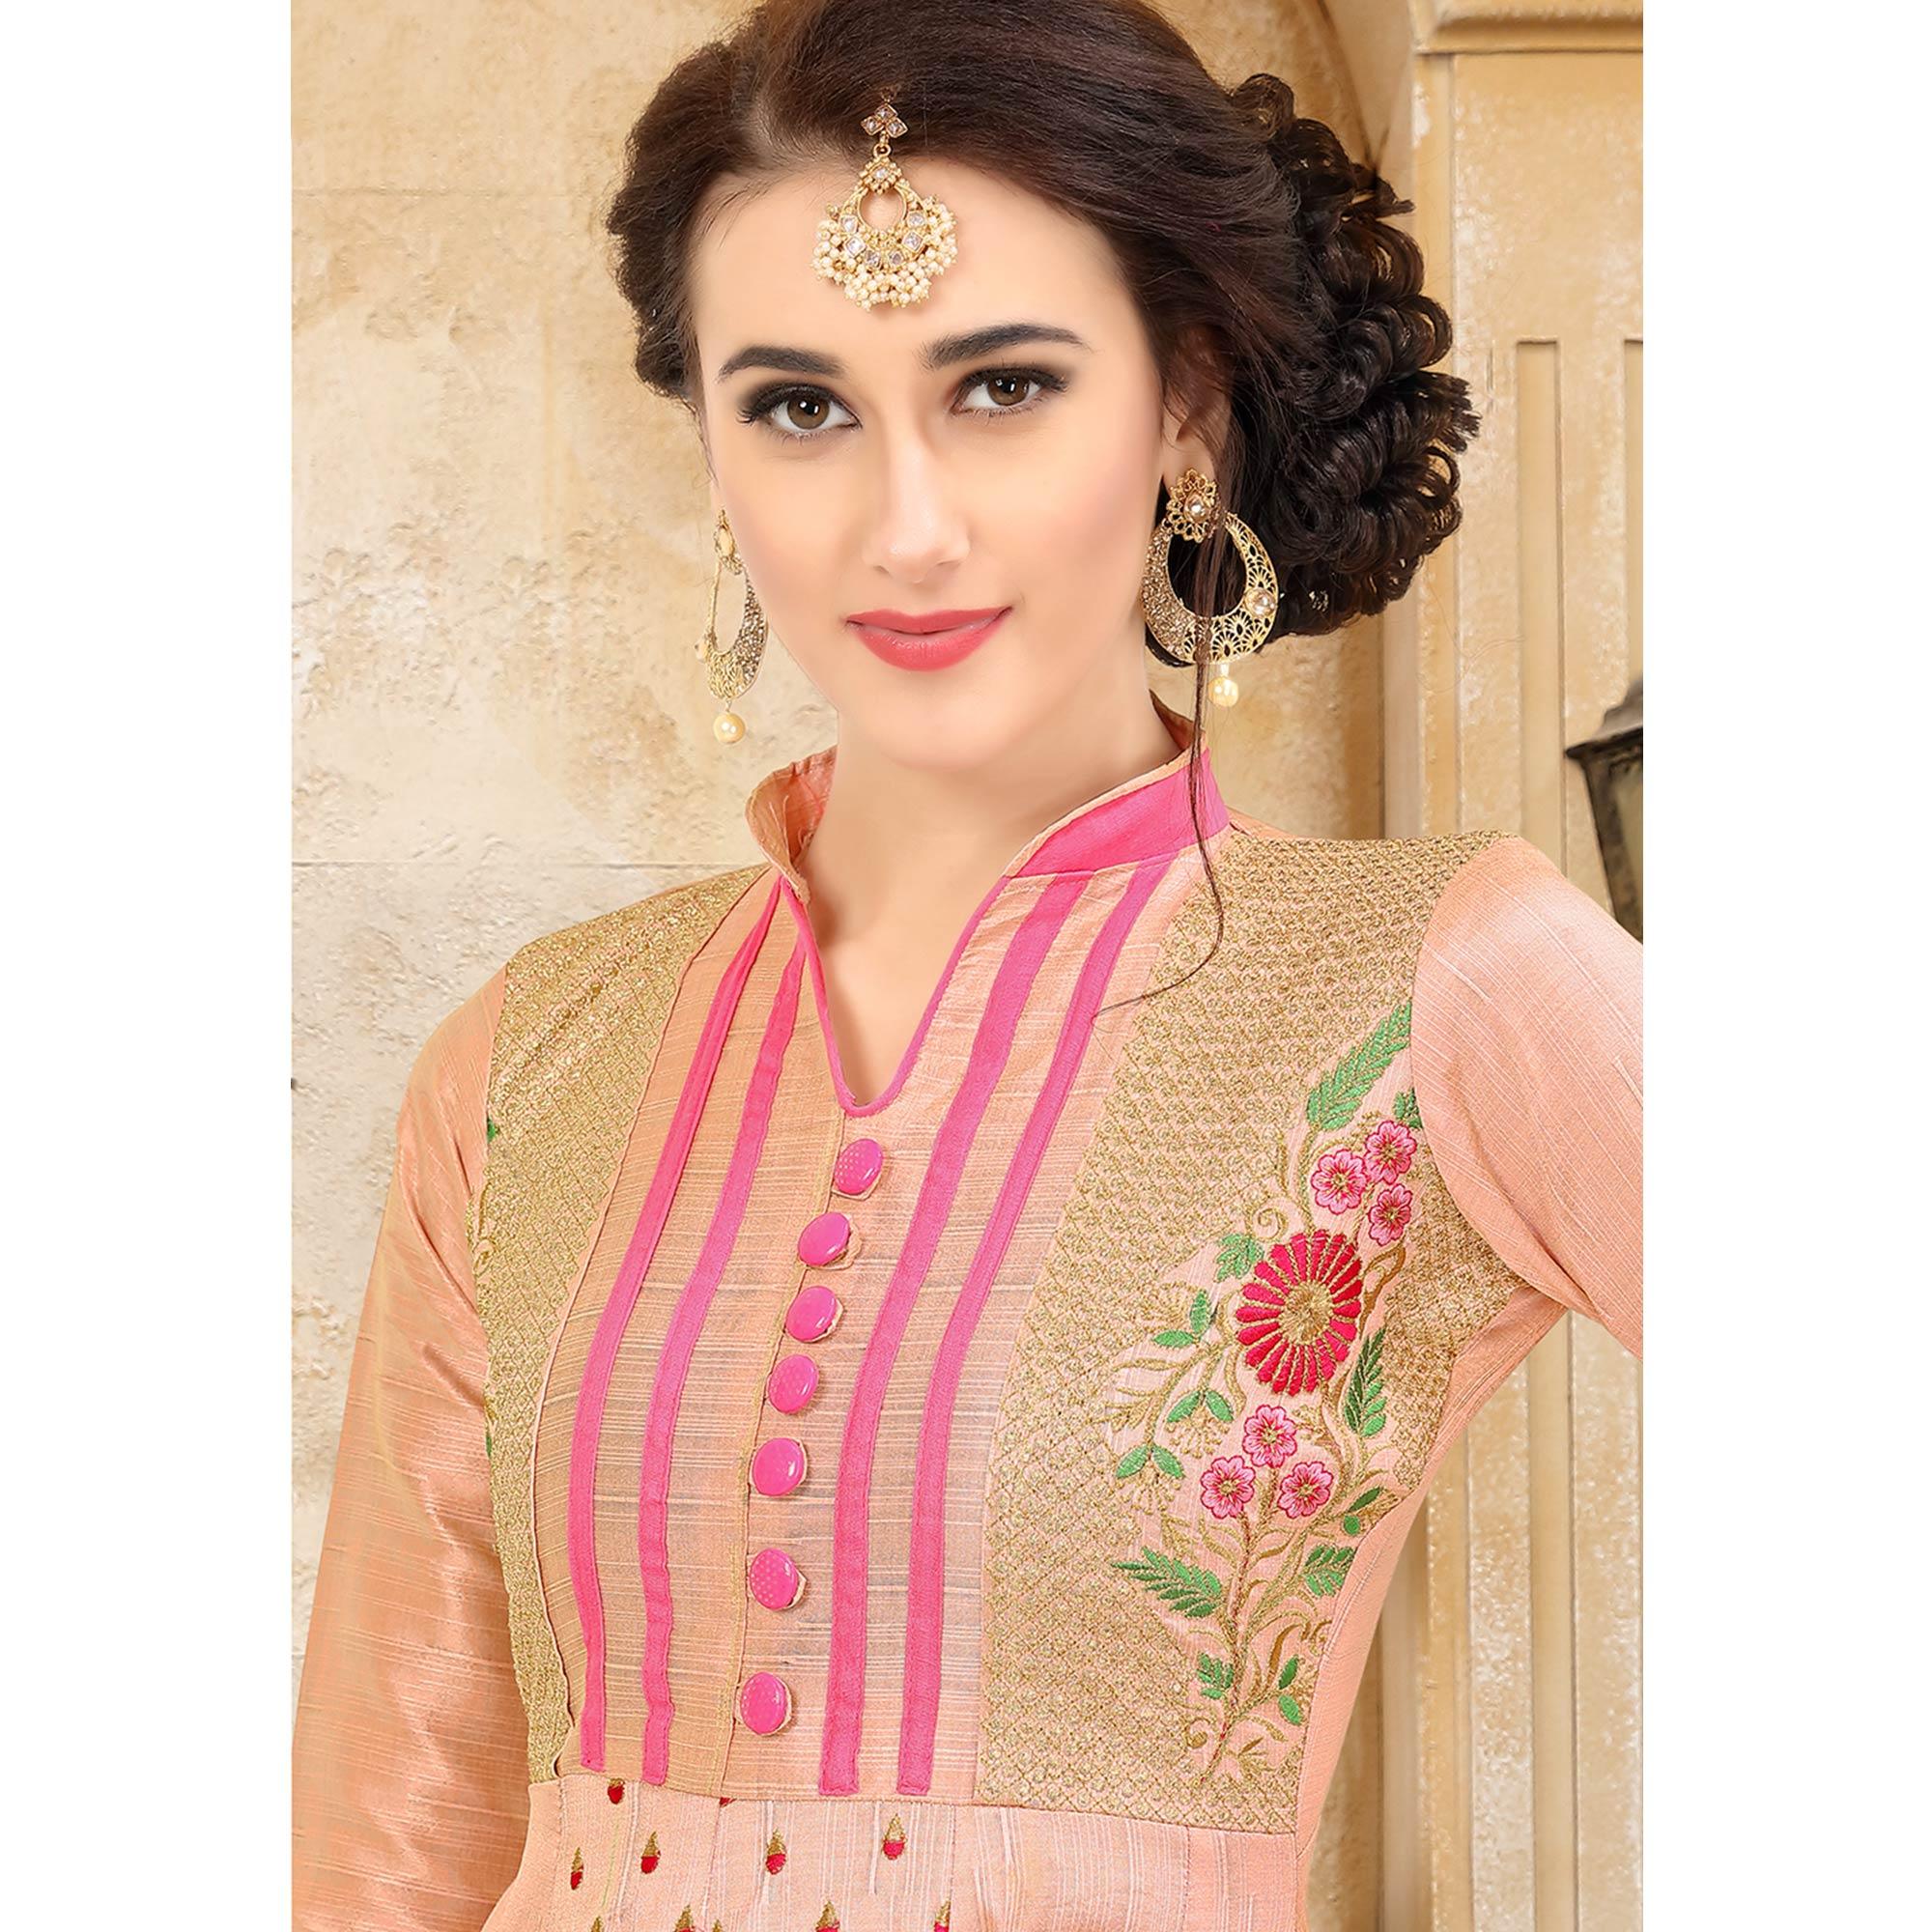 Heavy Fancy Bollywood Indian New Party Formal Wear Anarkali Beautifull Long  Gown | eBay